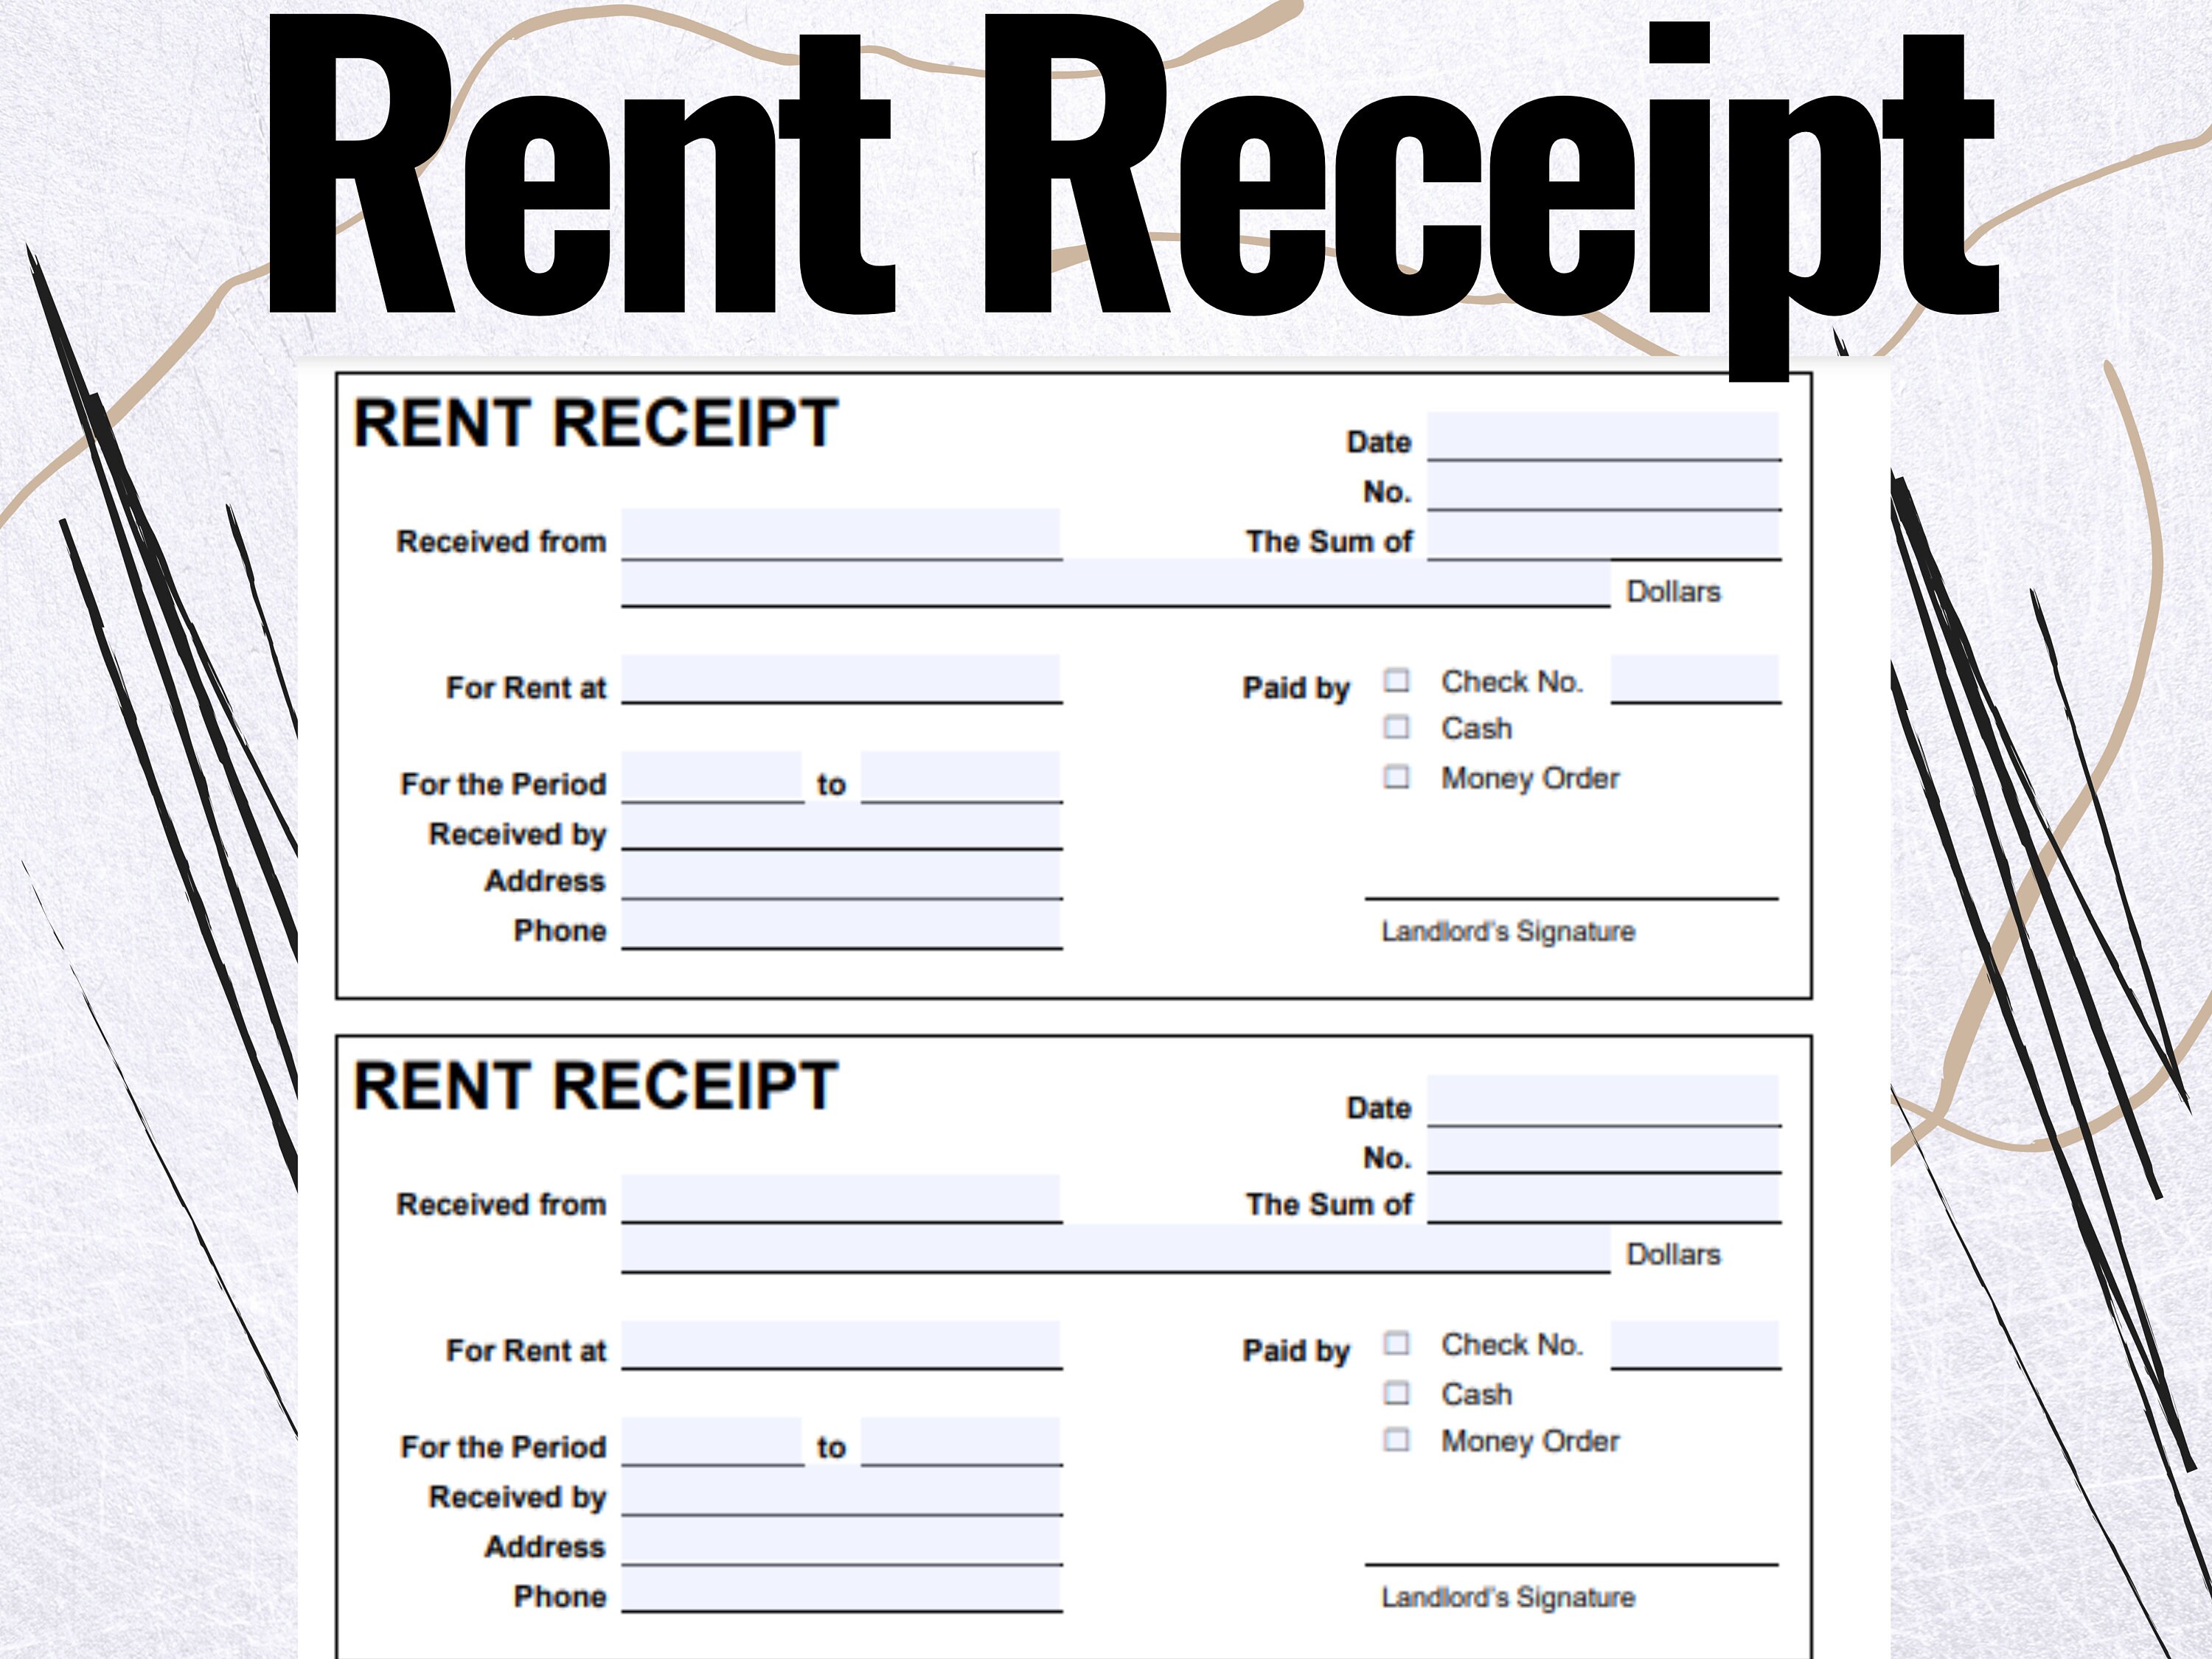 Rent Receipt Rent Receipt Forms Rent Receipt Template Etsy